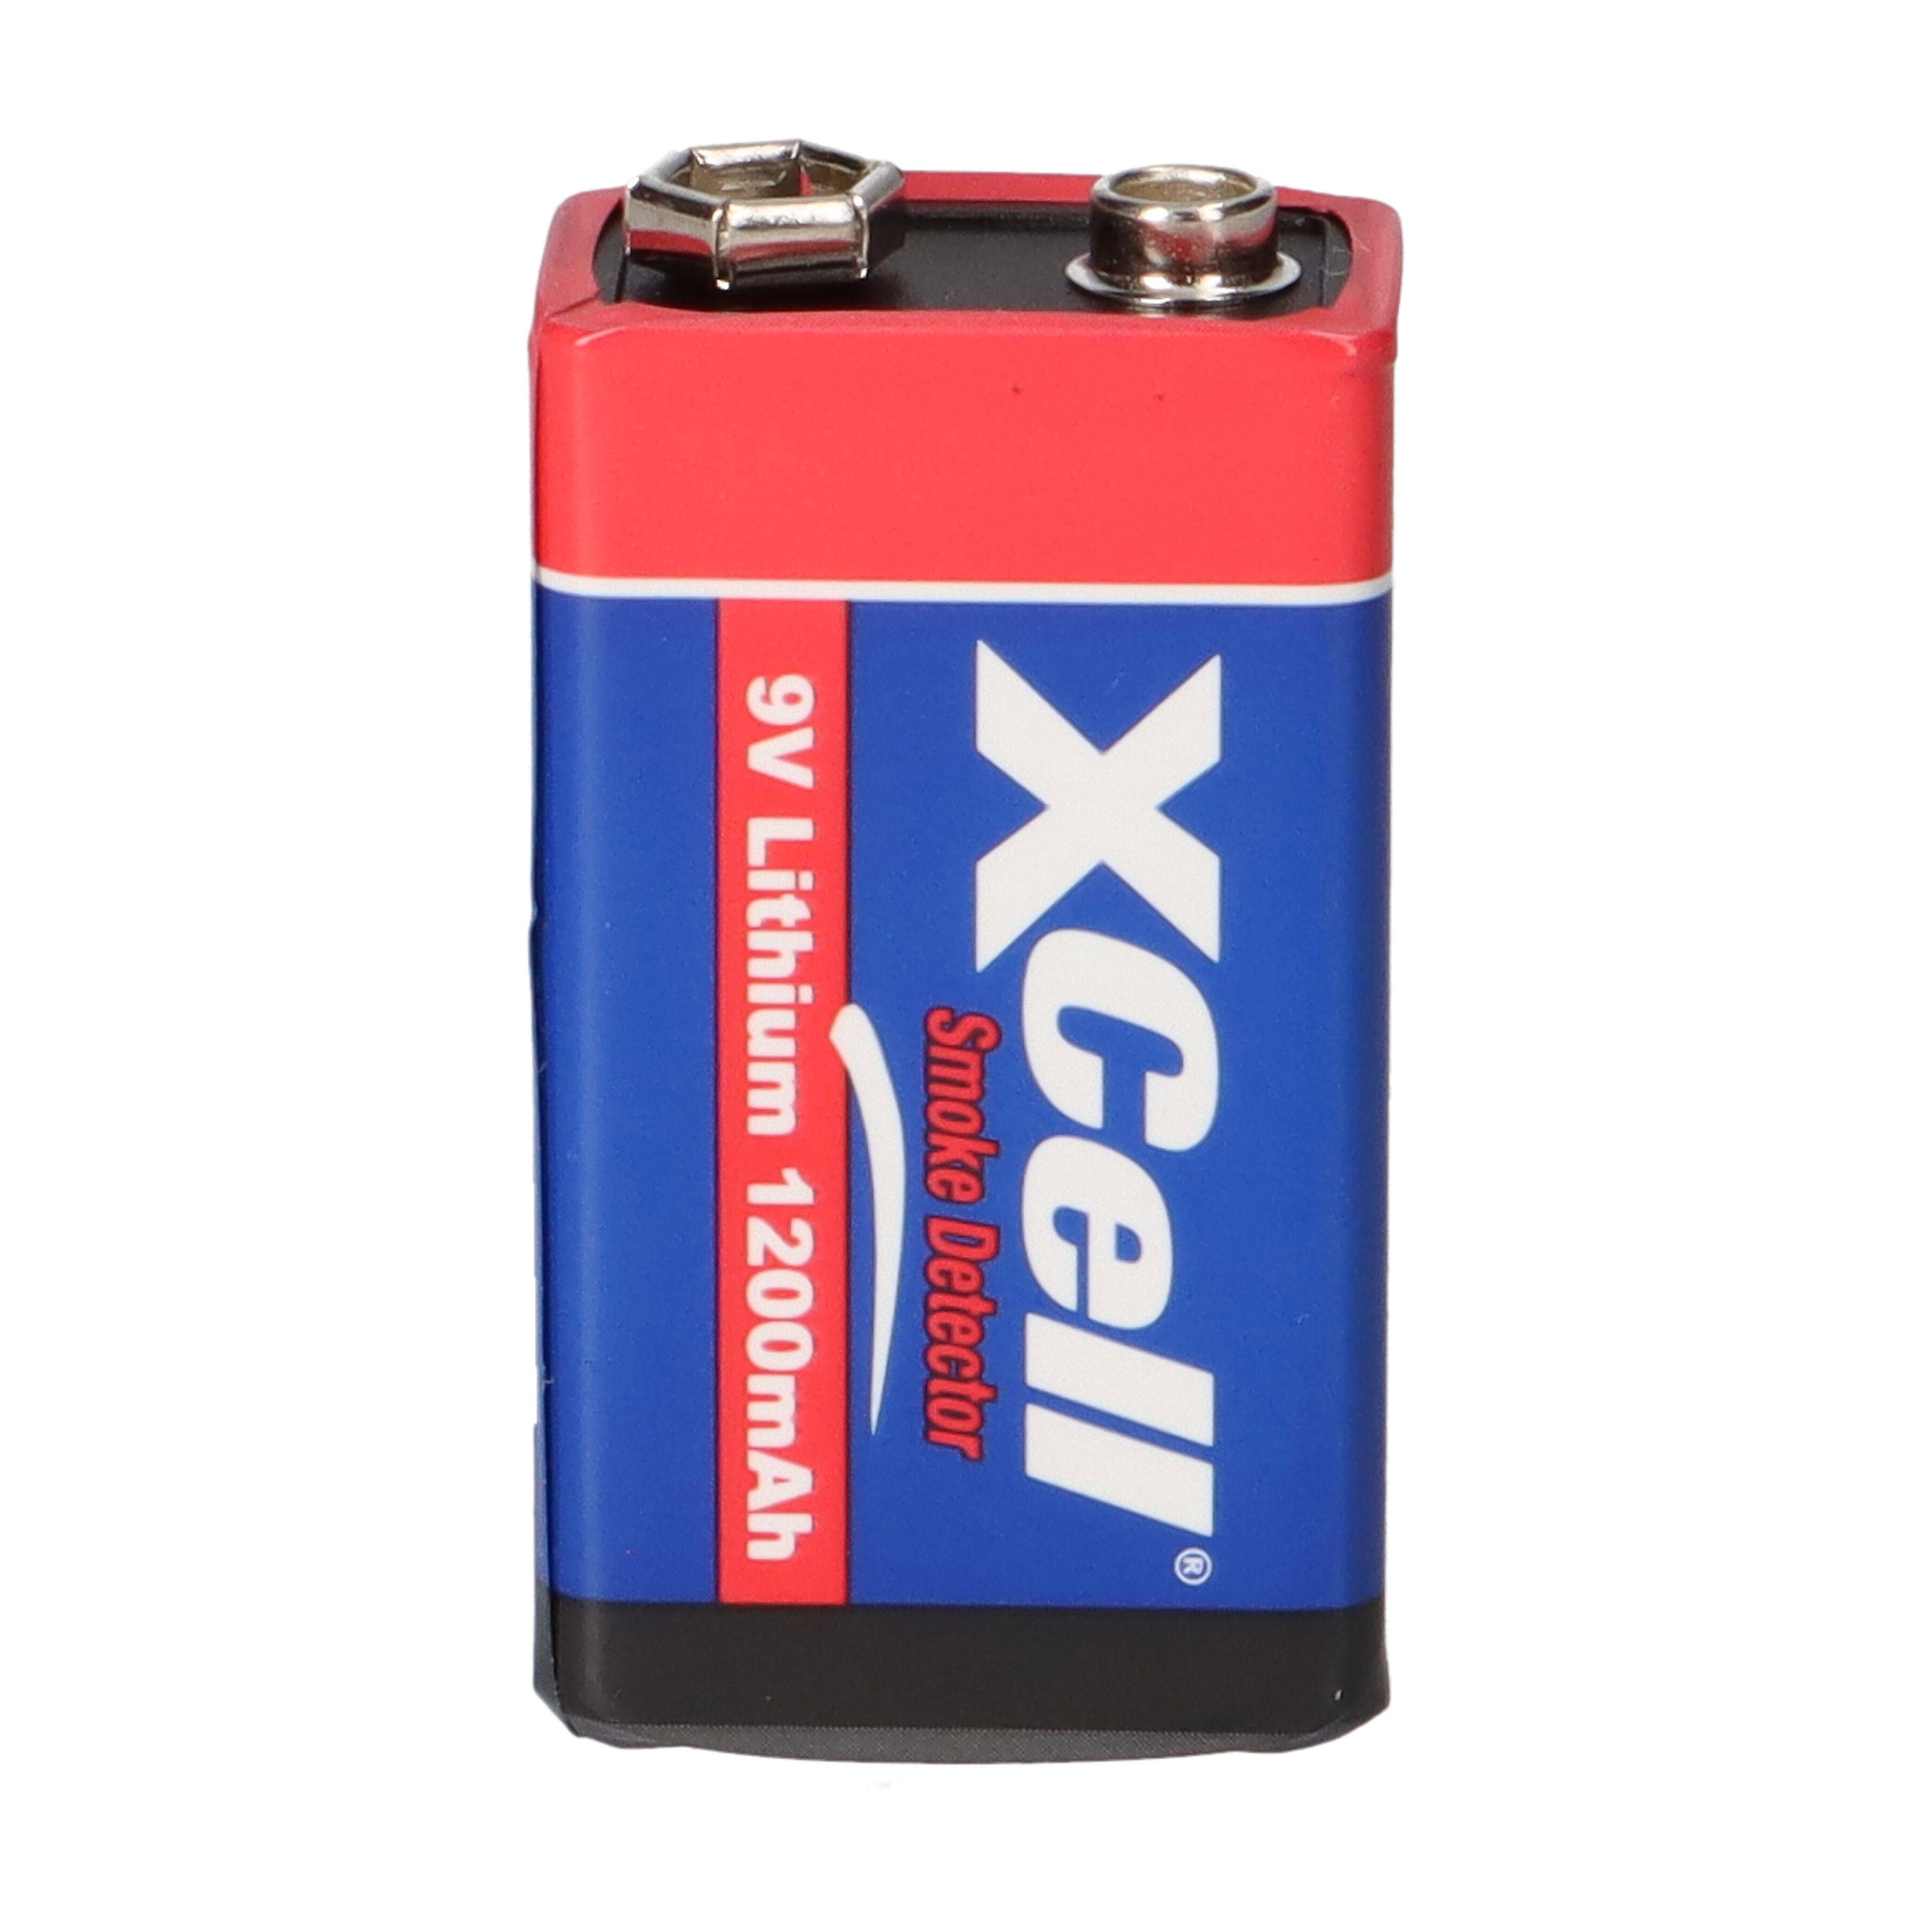 XCell für Lithium Batterien Block XCell Rauchmelder / Batterie 9V Hochleistungs- 10x